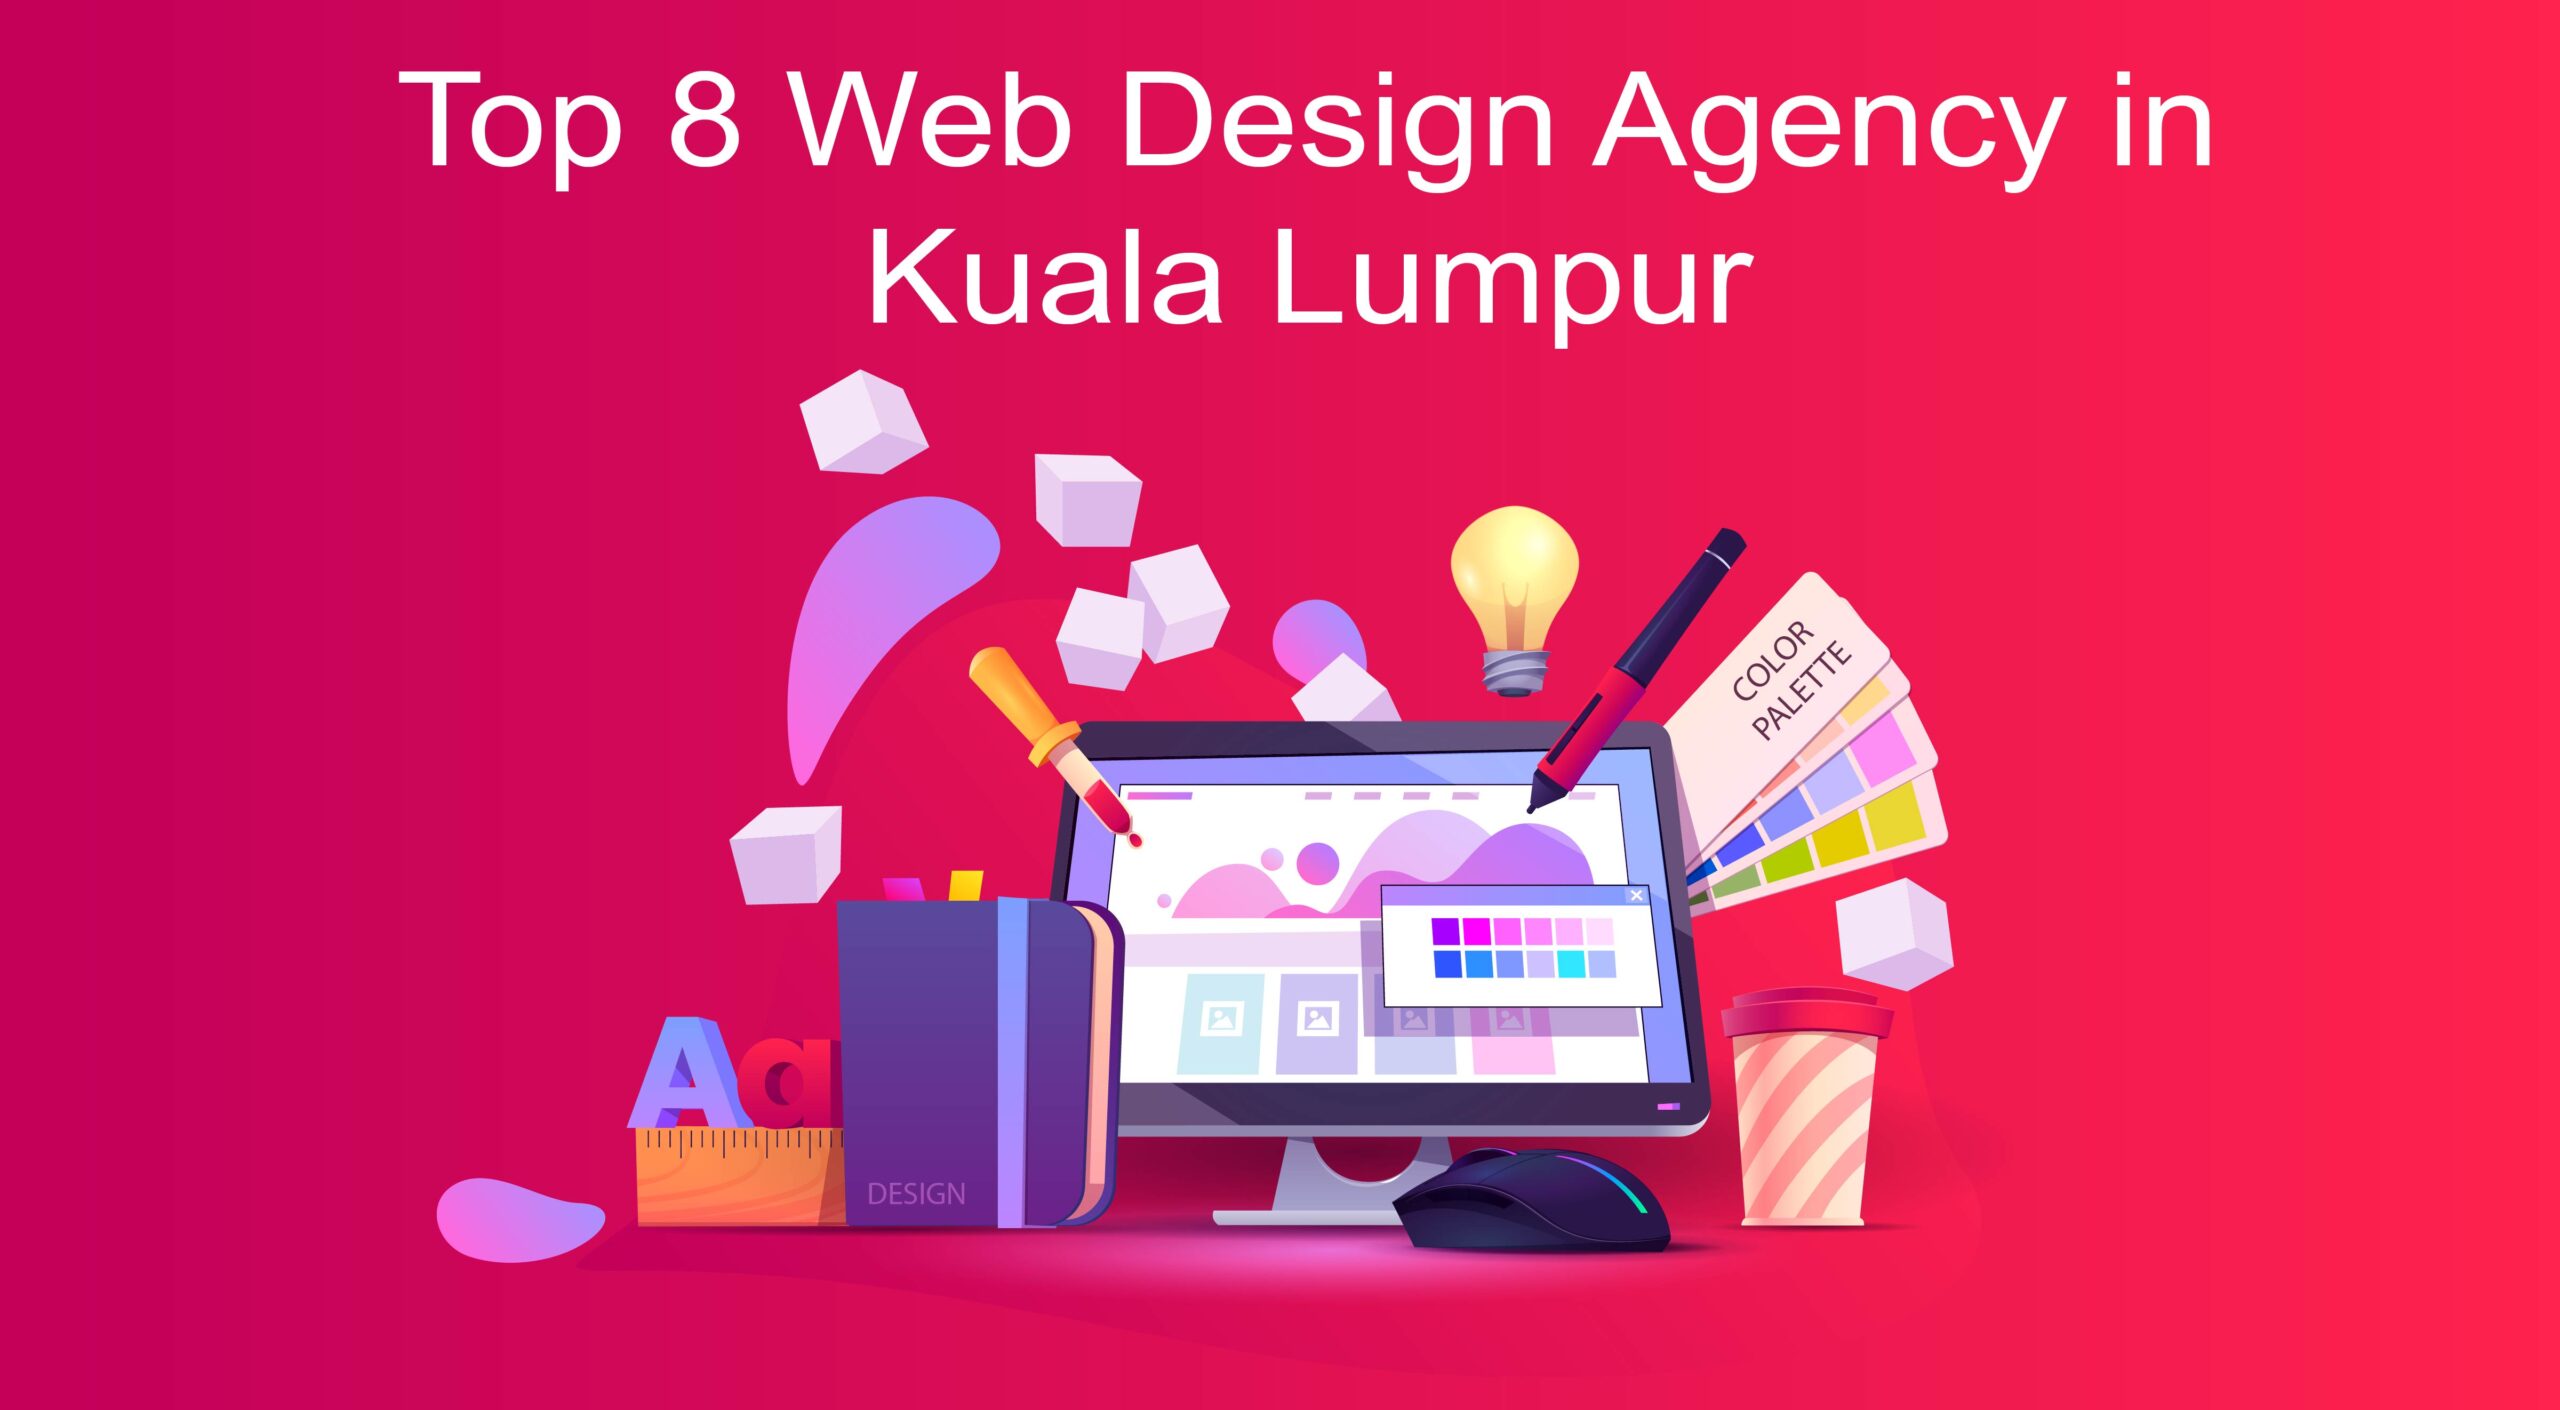 Web Design Agency in Kuala Lumpur